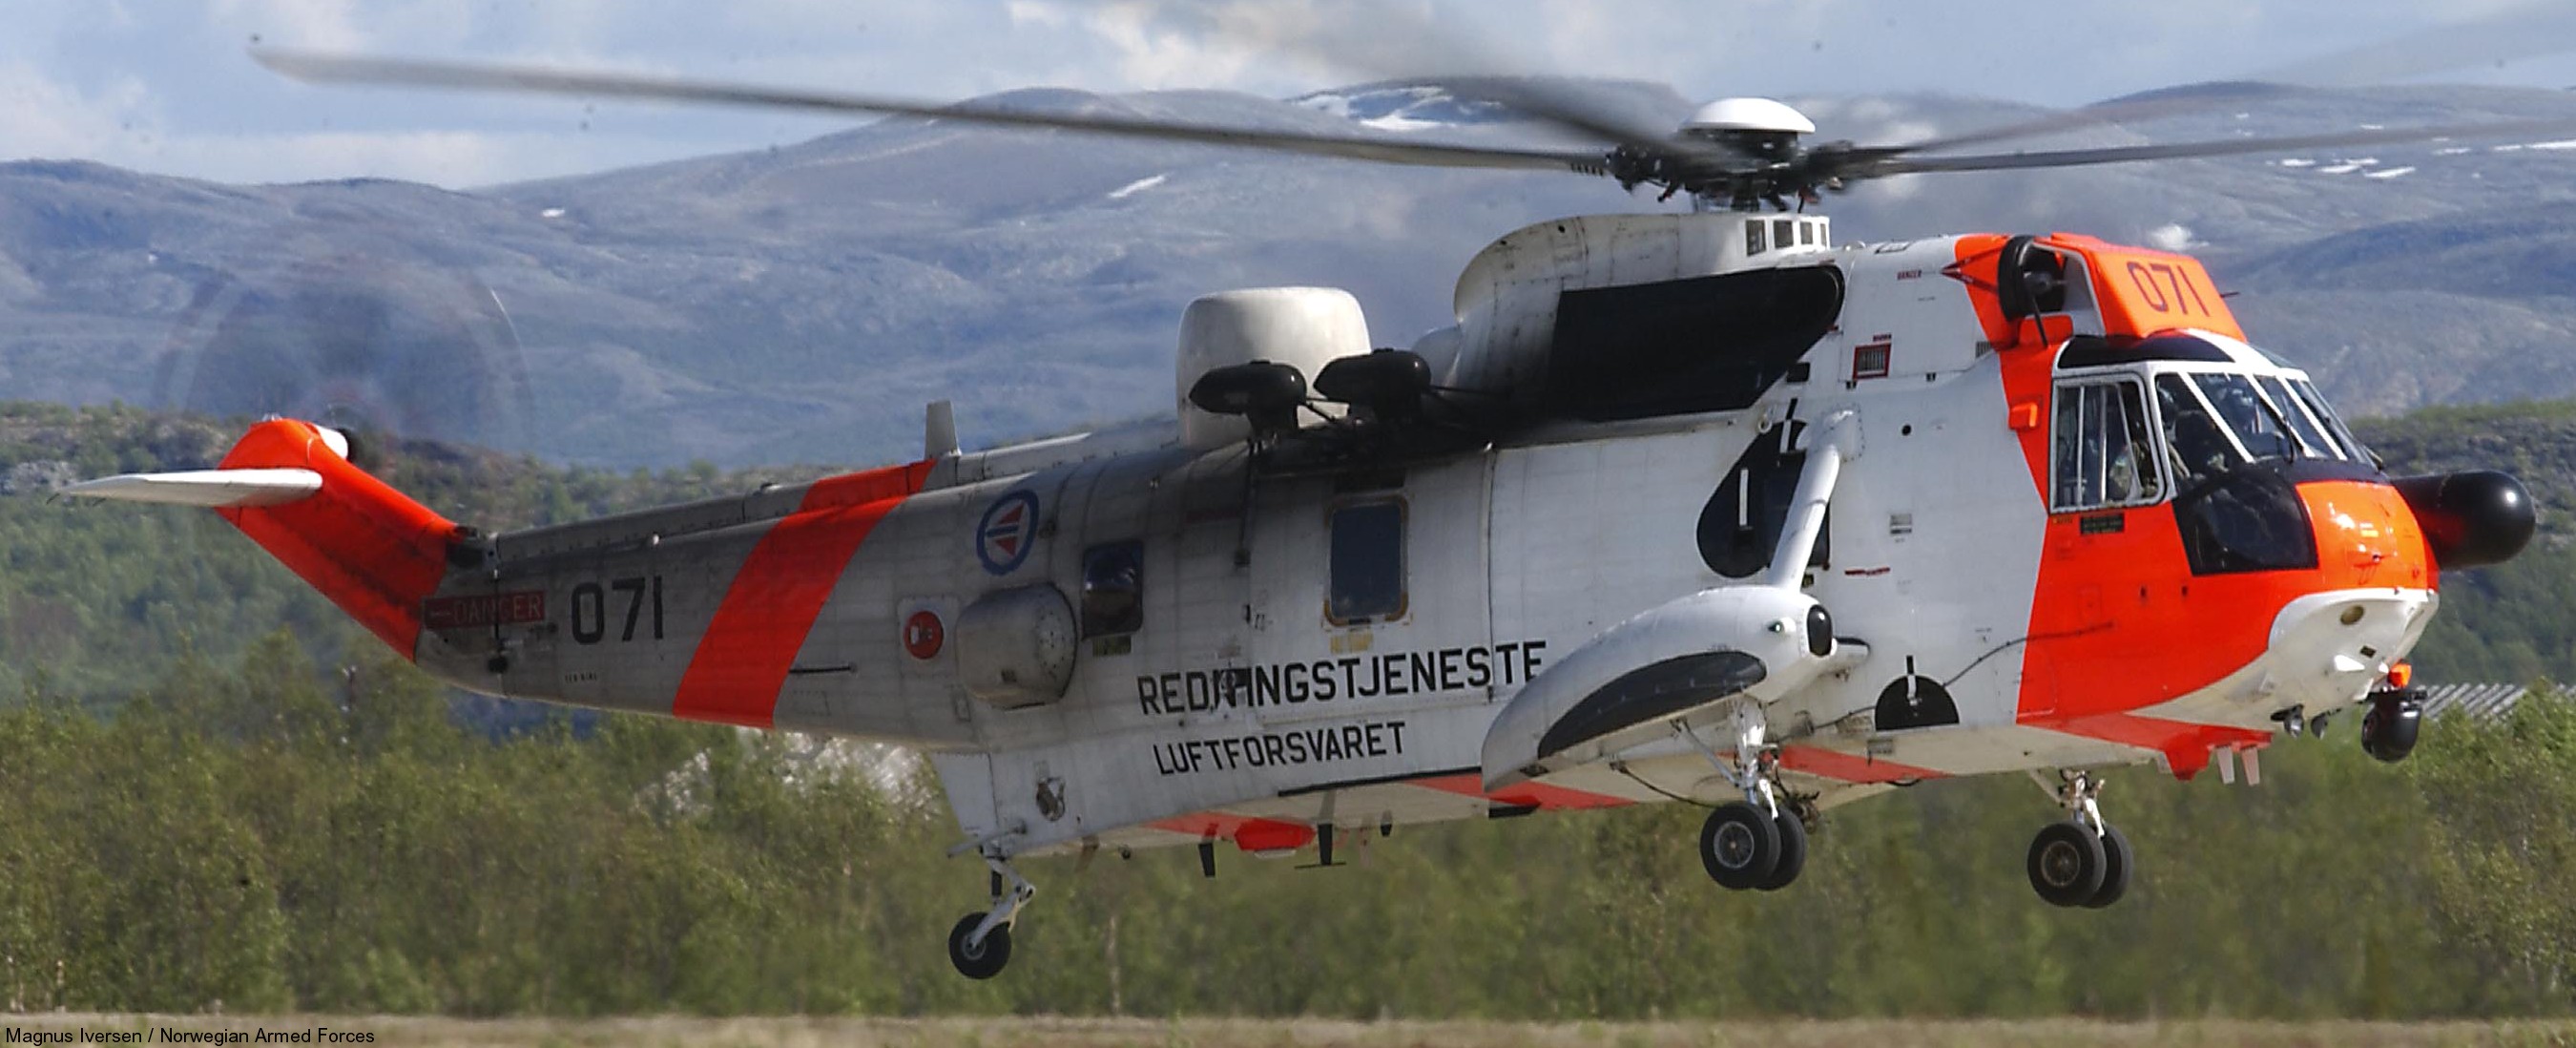 westland ws-61 sea king royal norwegian air force sar rescue 330 squadron skvadron luftforsvaret 071 02